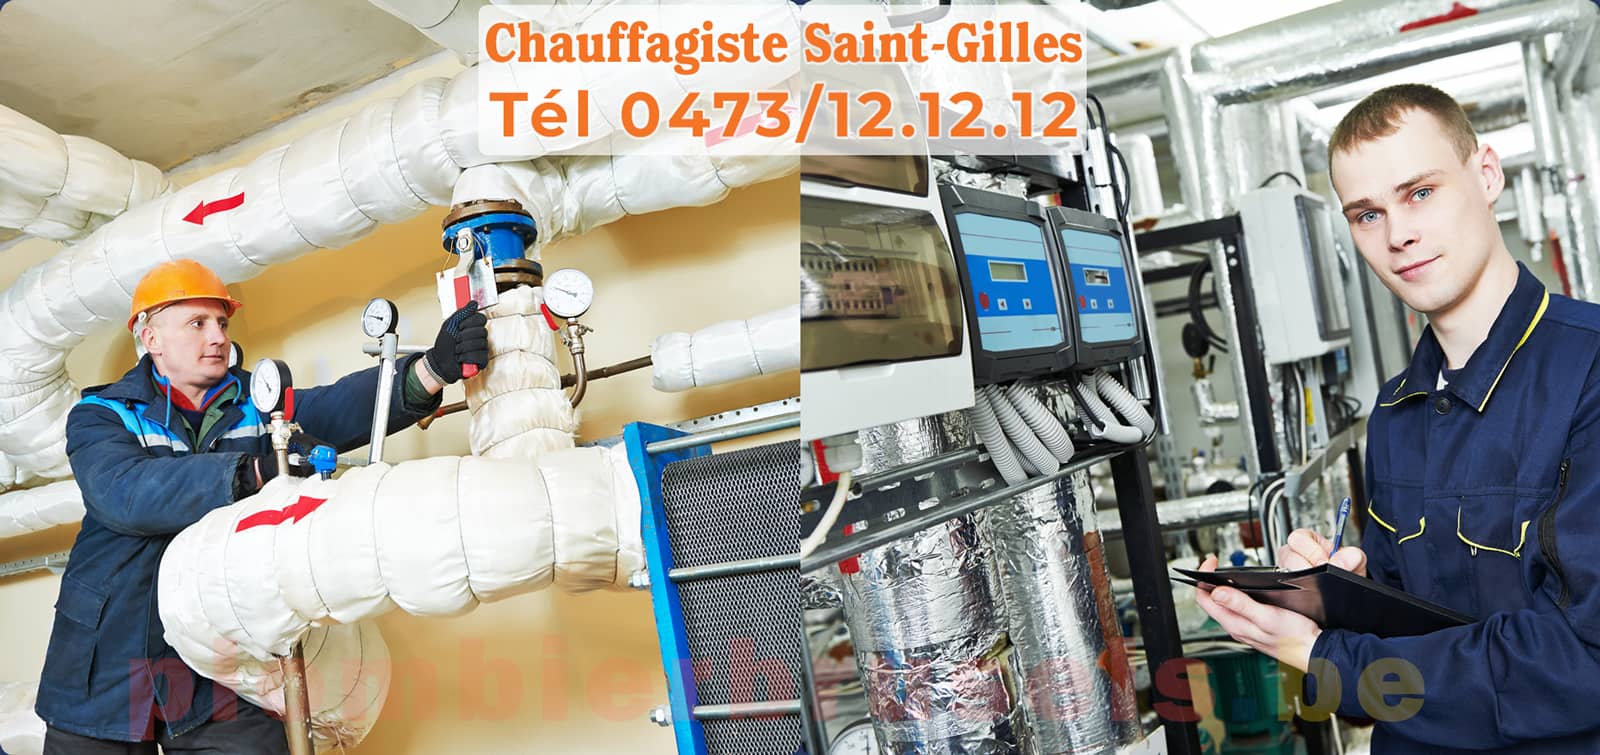 Chauffagiste Saint-Gilles service de Chauffage tél 0473/12.12.12